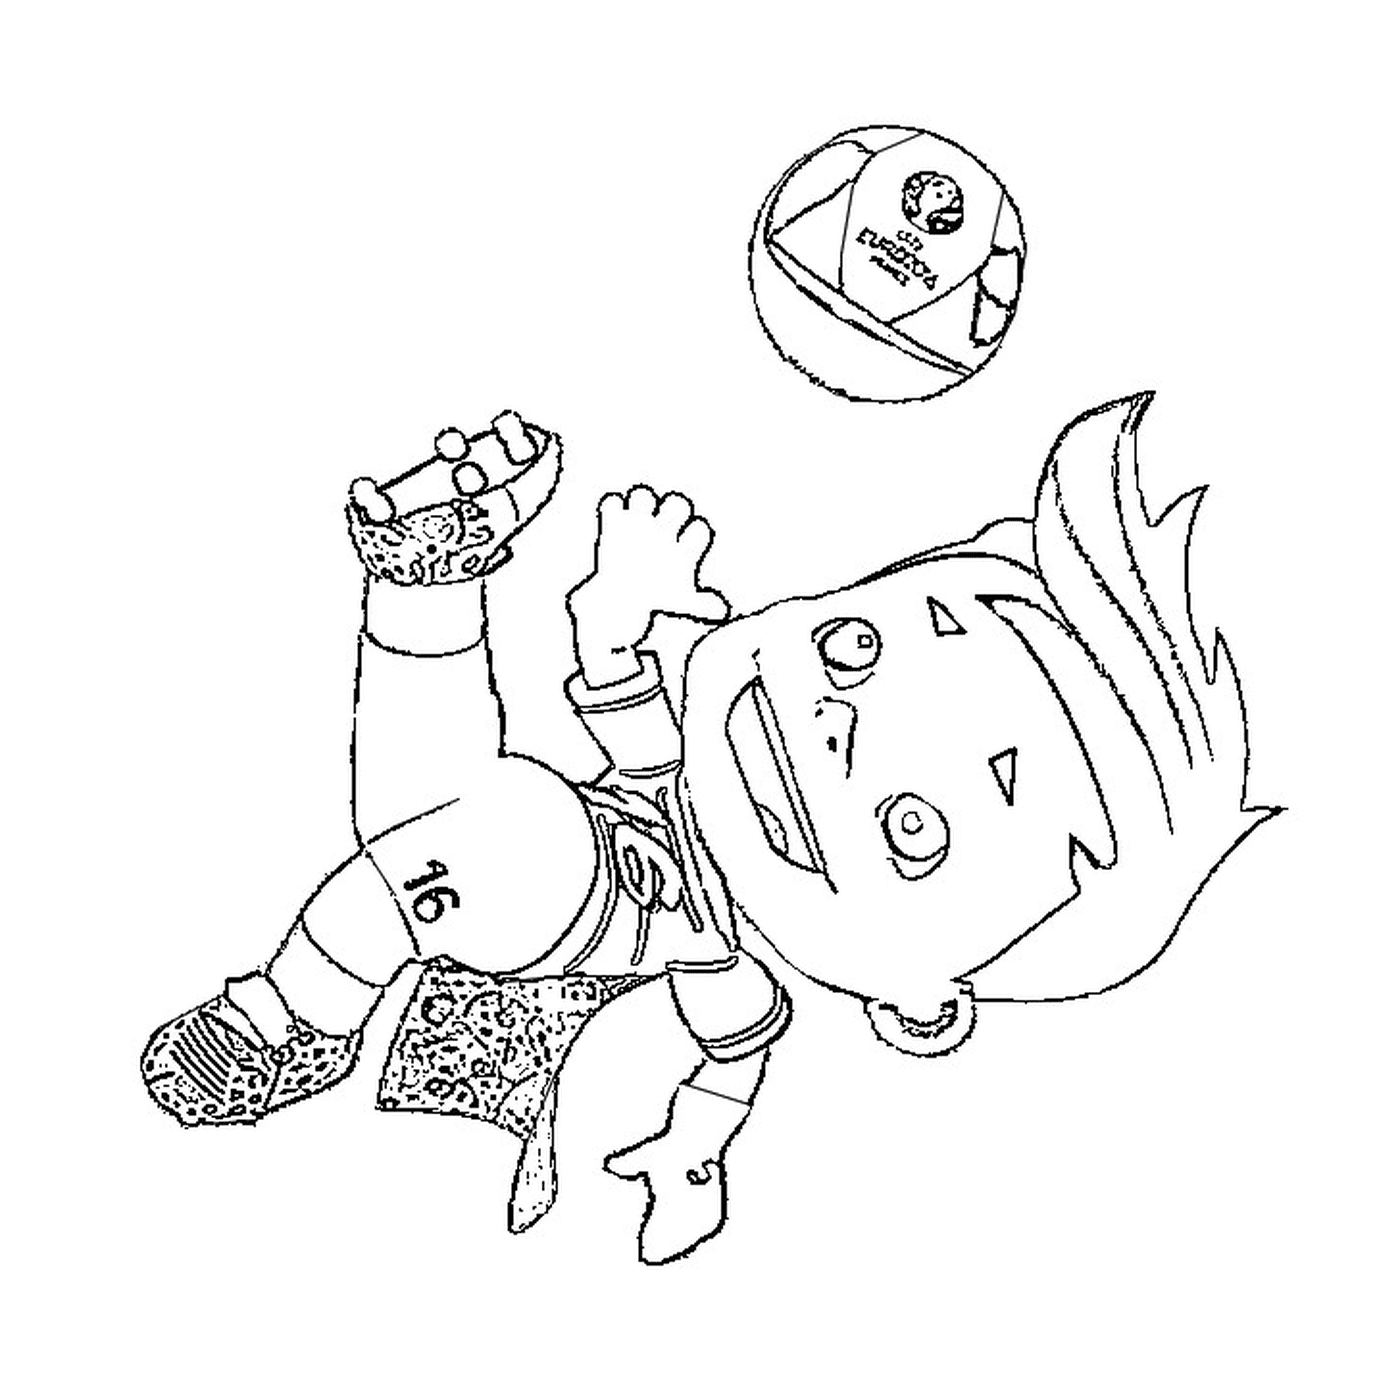   Un garçon joue avec un ballon 